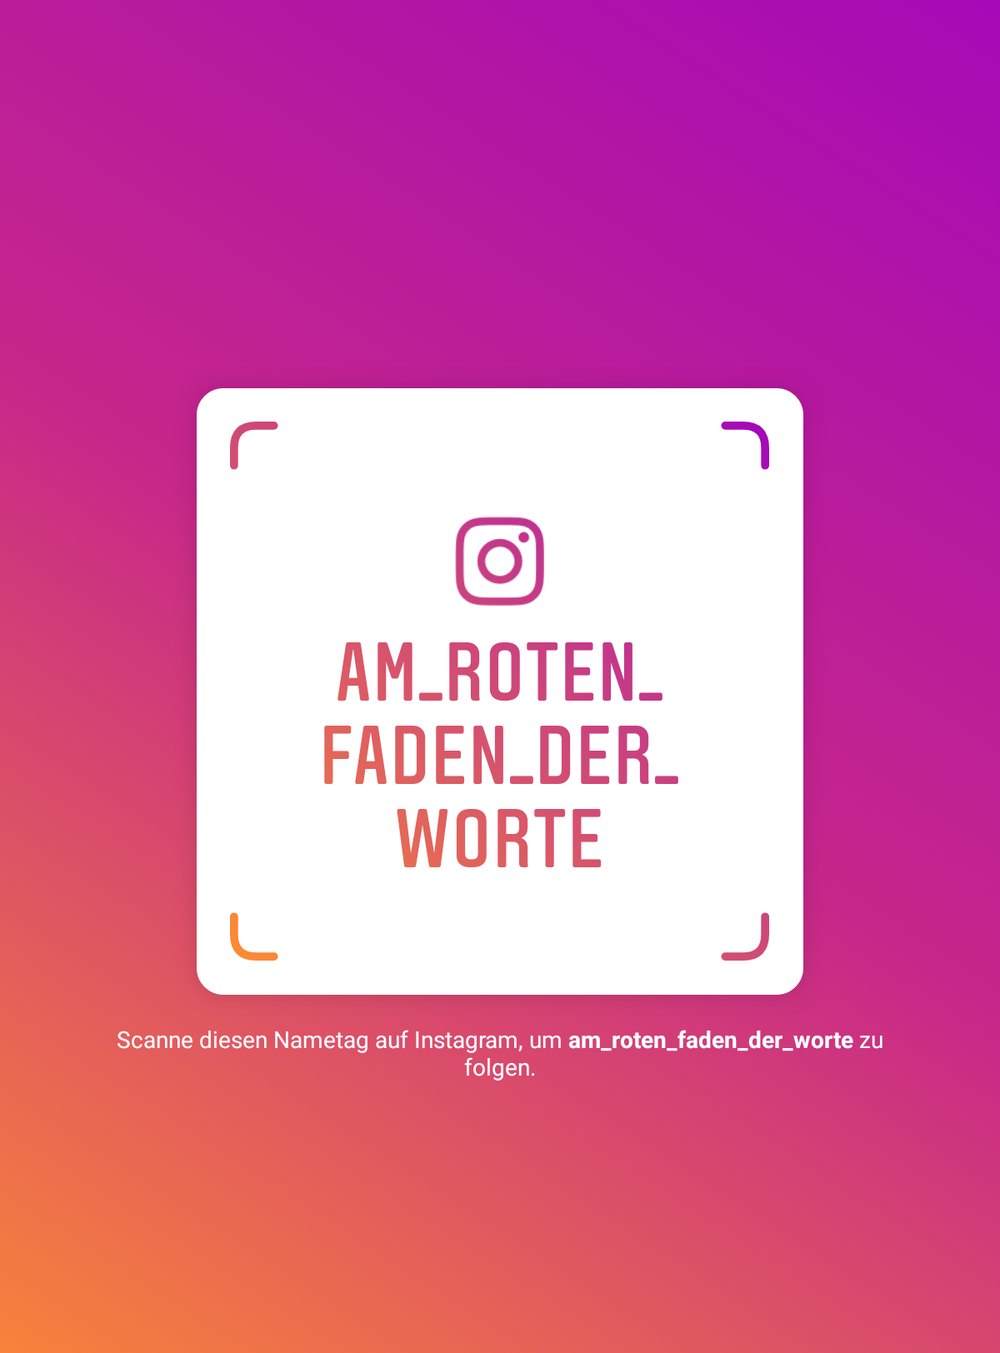 Neues Projekt: Wortbilder auf Instagram